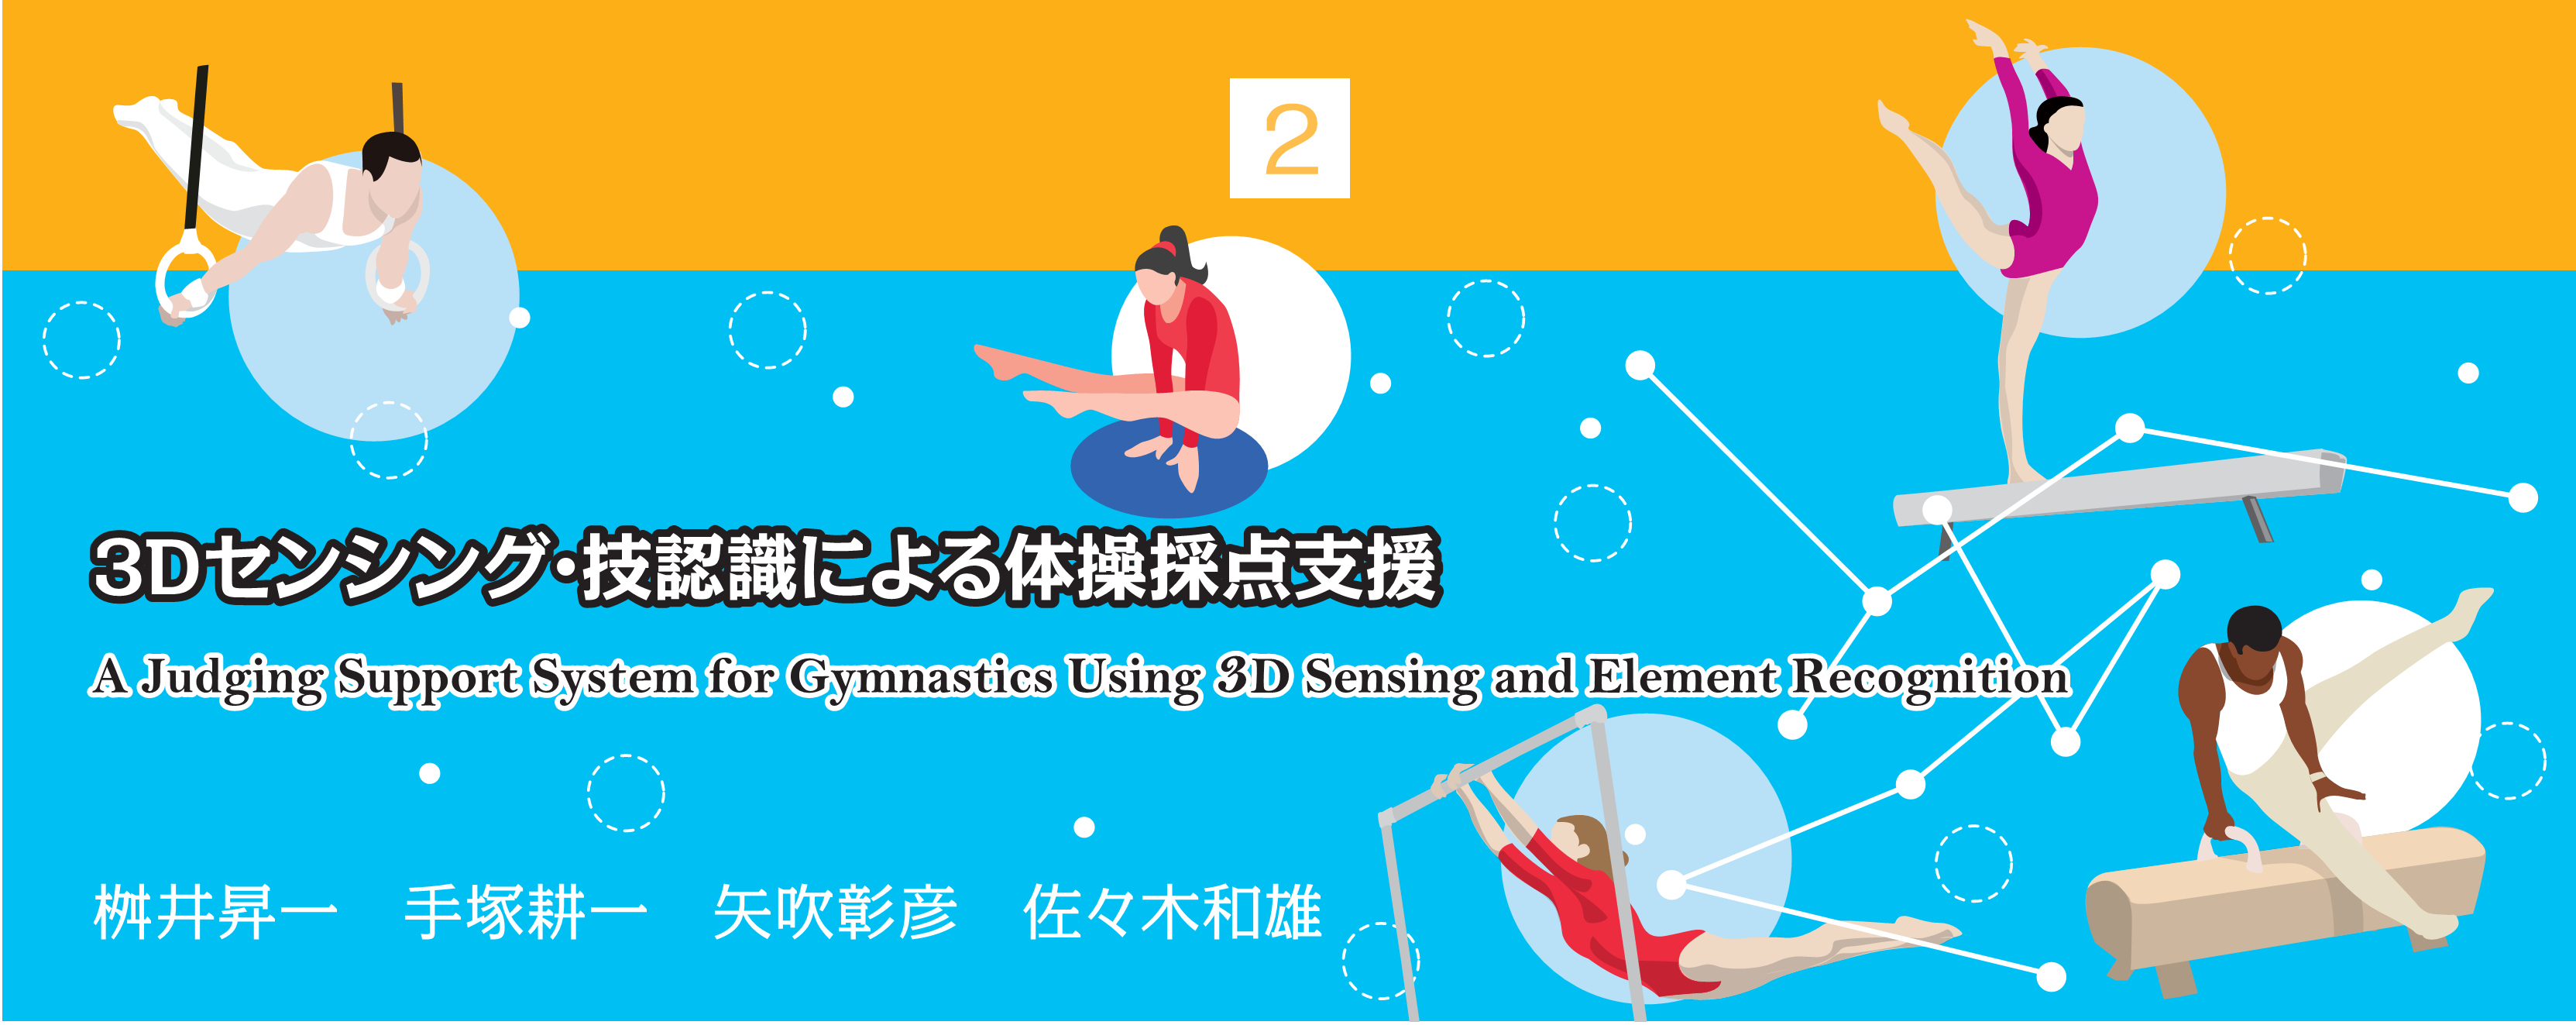 特別小特集 2. 3Dセンシング・技認識による体操採点支援